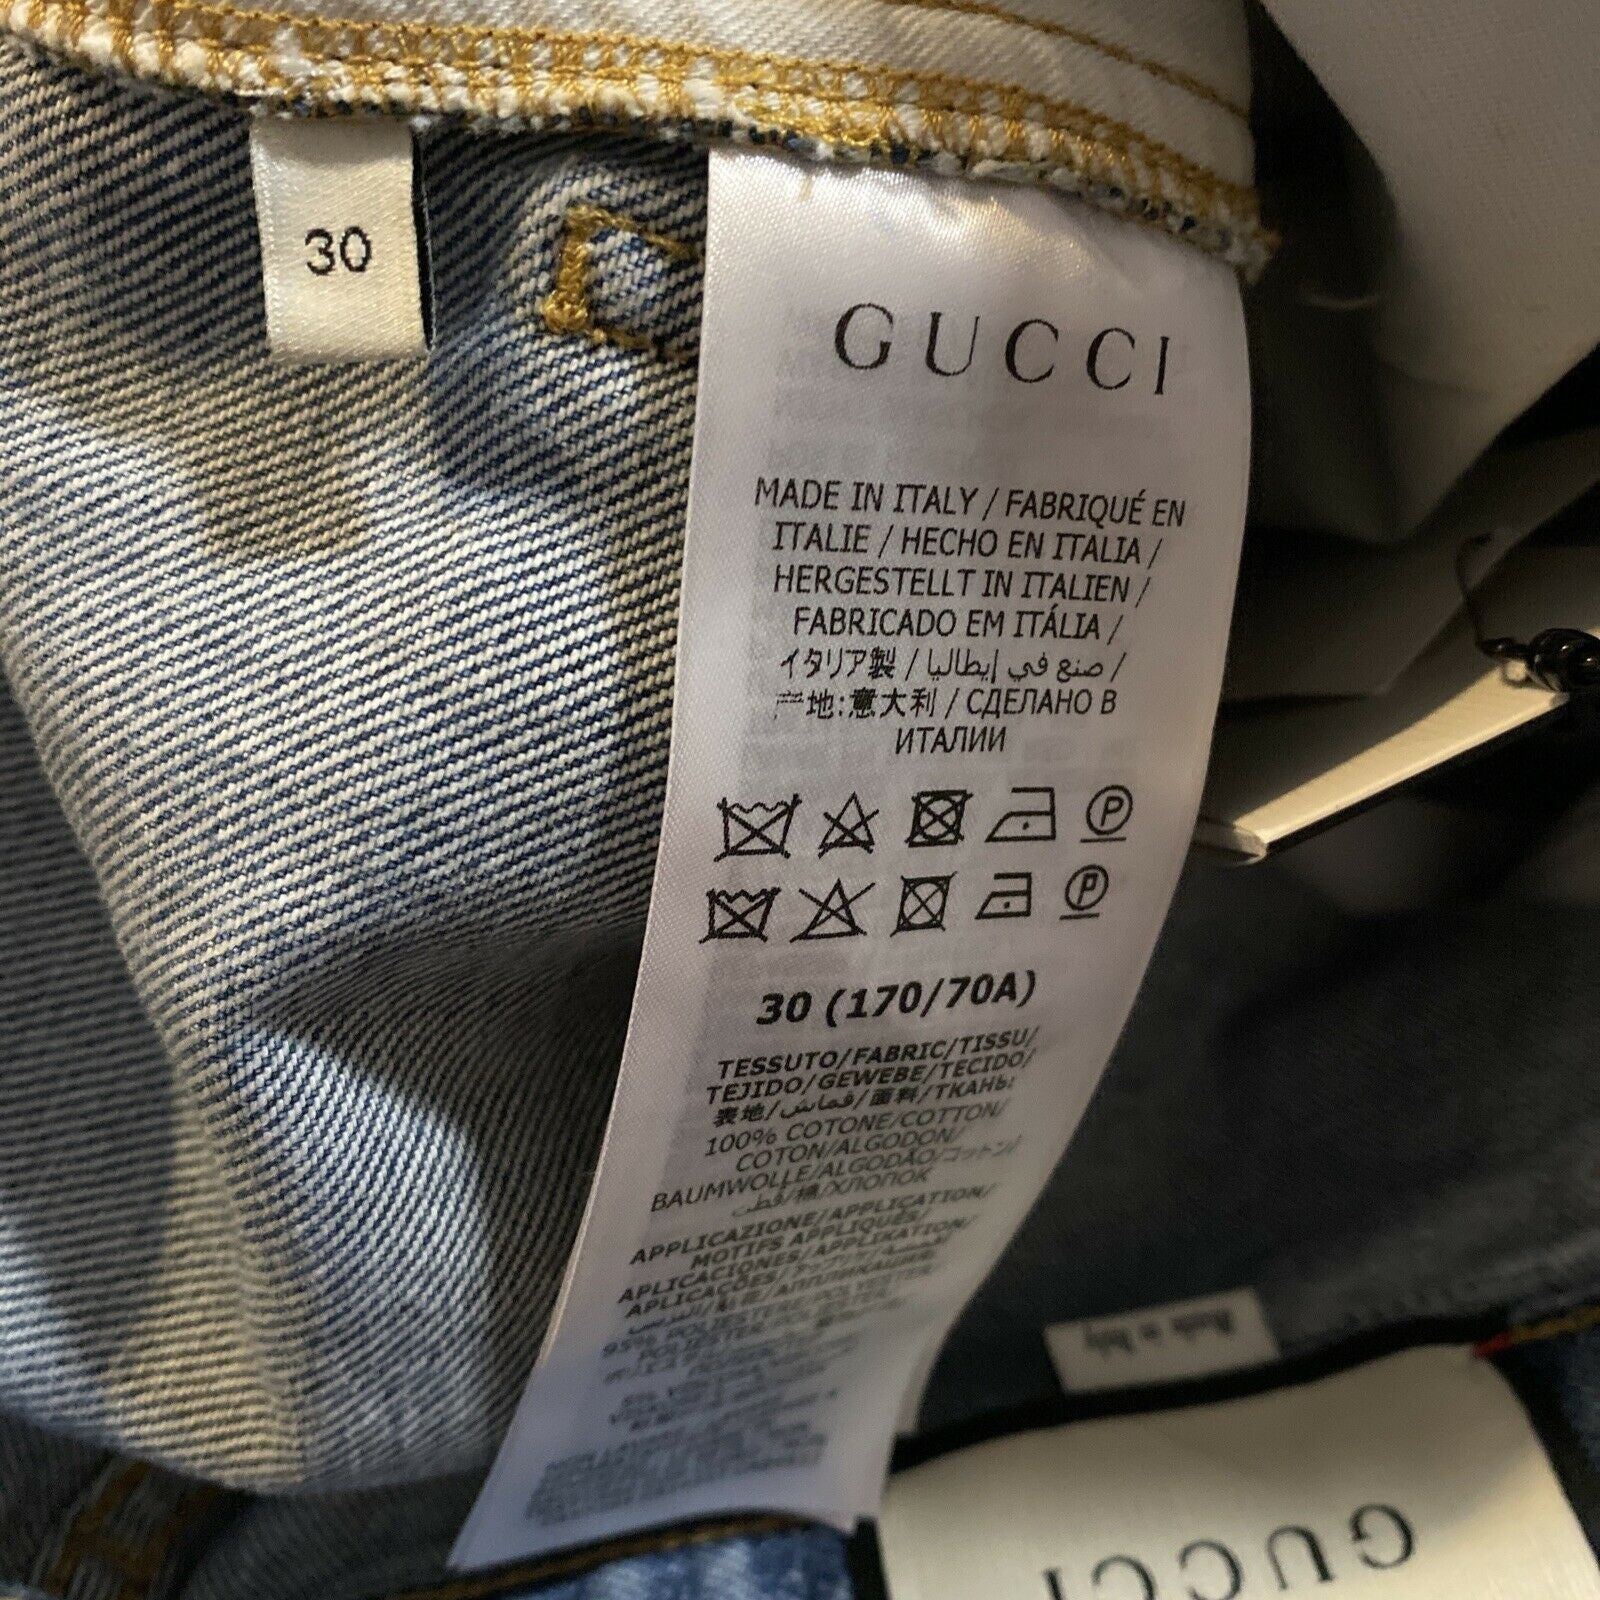 СЗТ $1500 Мужские короткие джинсовые брюки Gucci синие, размер 30 США/44 ЕС